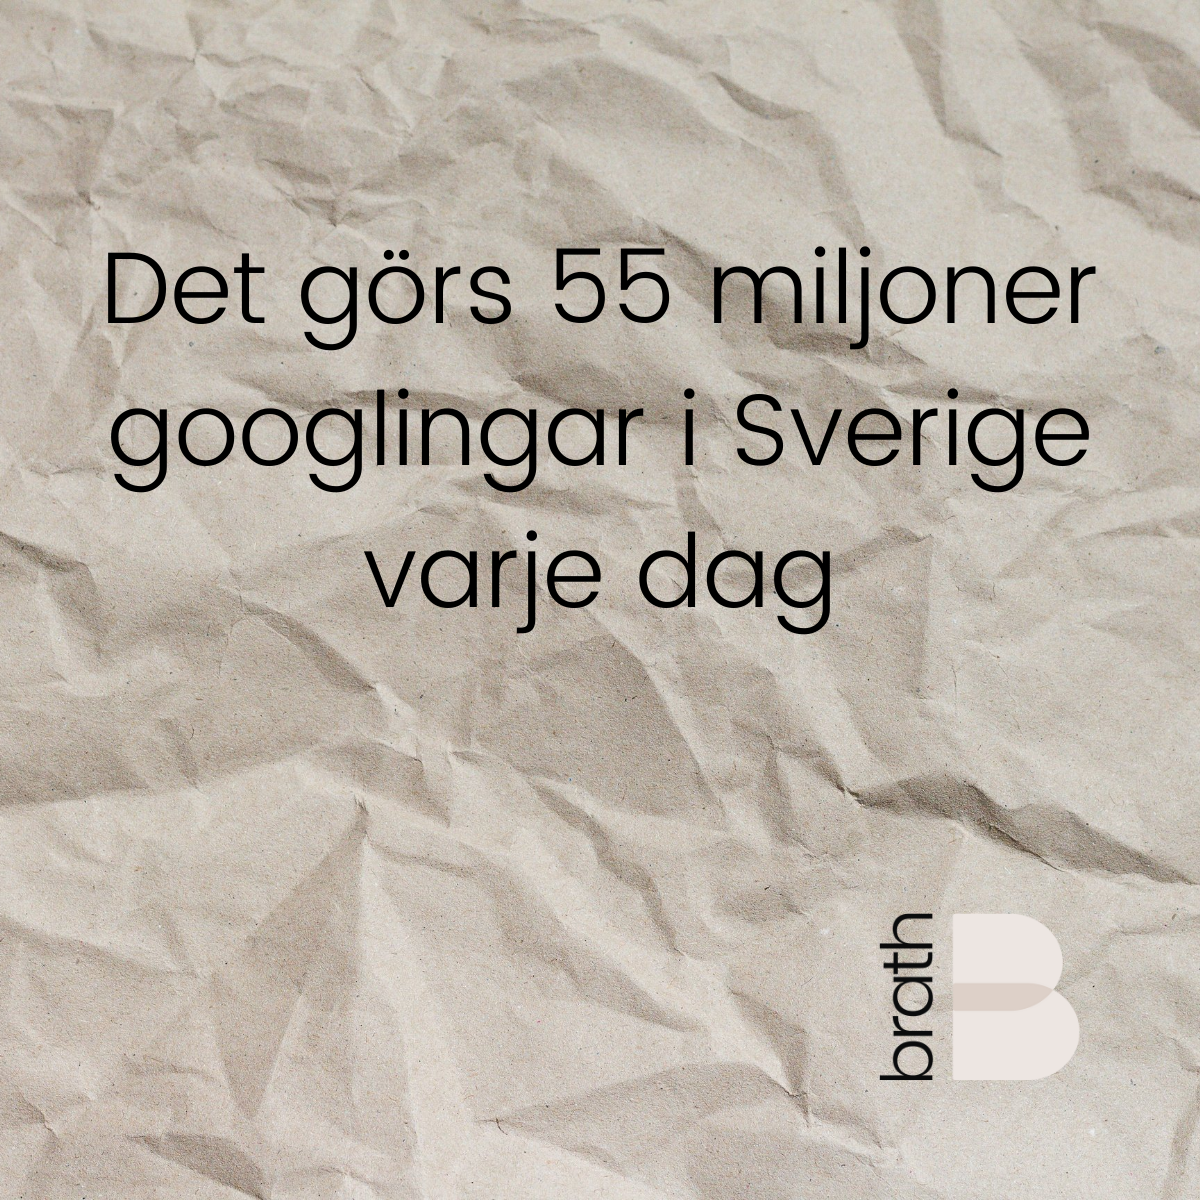 Det görs 55 miljoner googlingar i Sverige varje dag